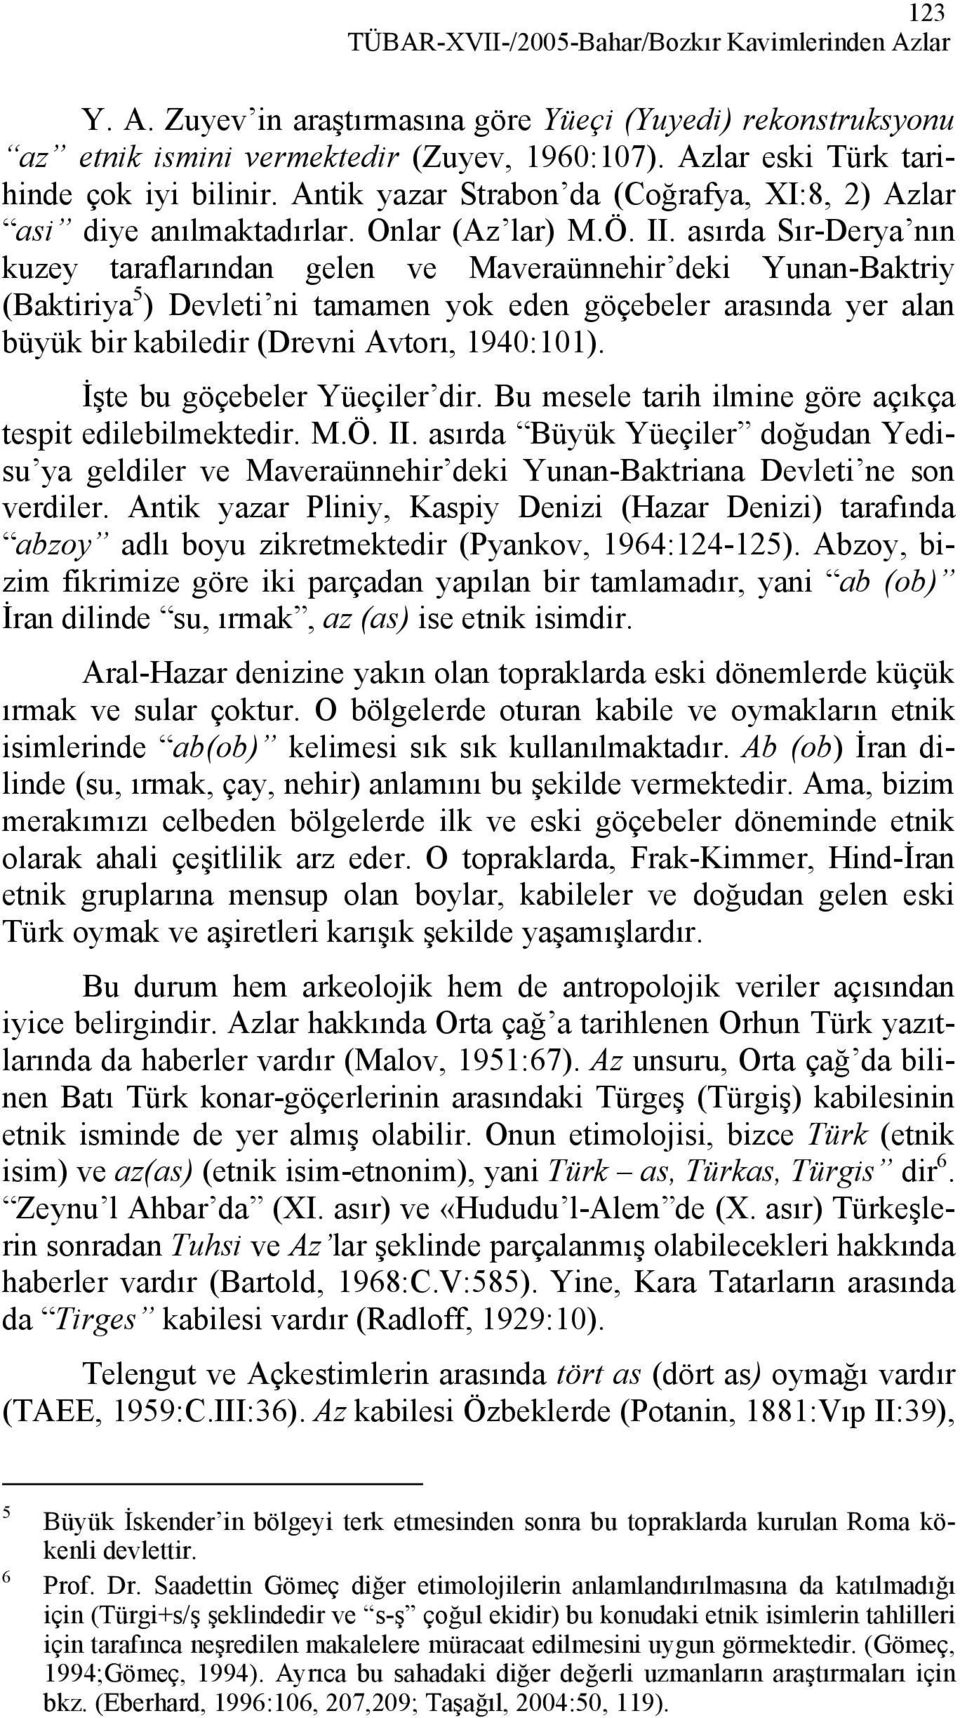 asırda Sır-Derya nın kuzey taraflarından gelen ve Maveraünnehir deki Yunan-Baktriy (Baktiriya 5 ) Devleti ni tamamen yok eden göçebeler arasında yer alan büyük bir kabiledir (Drevni Avtorı, 1940:101).